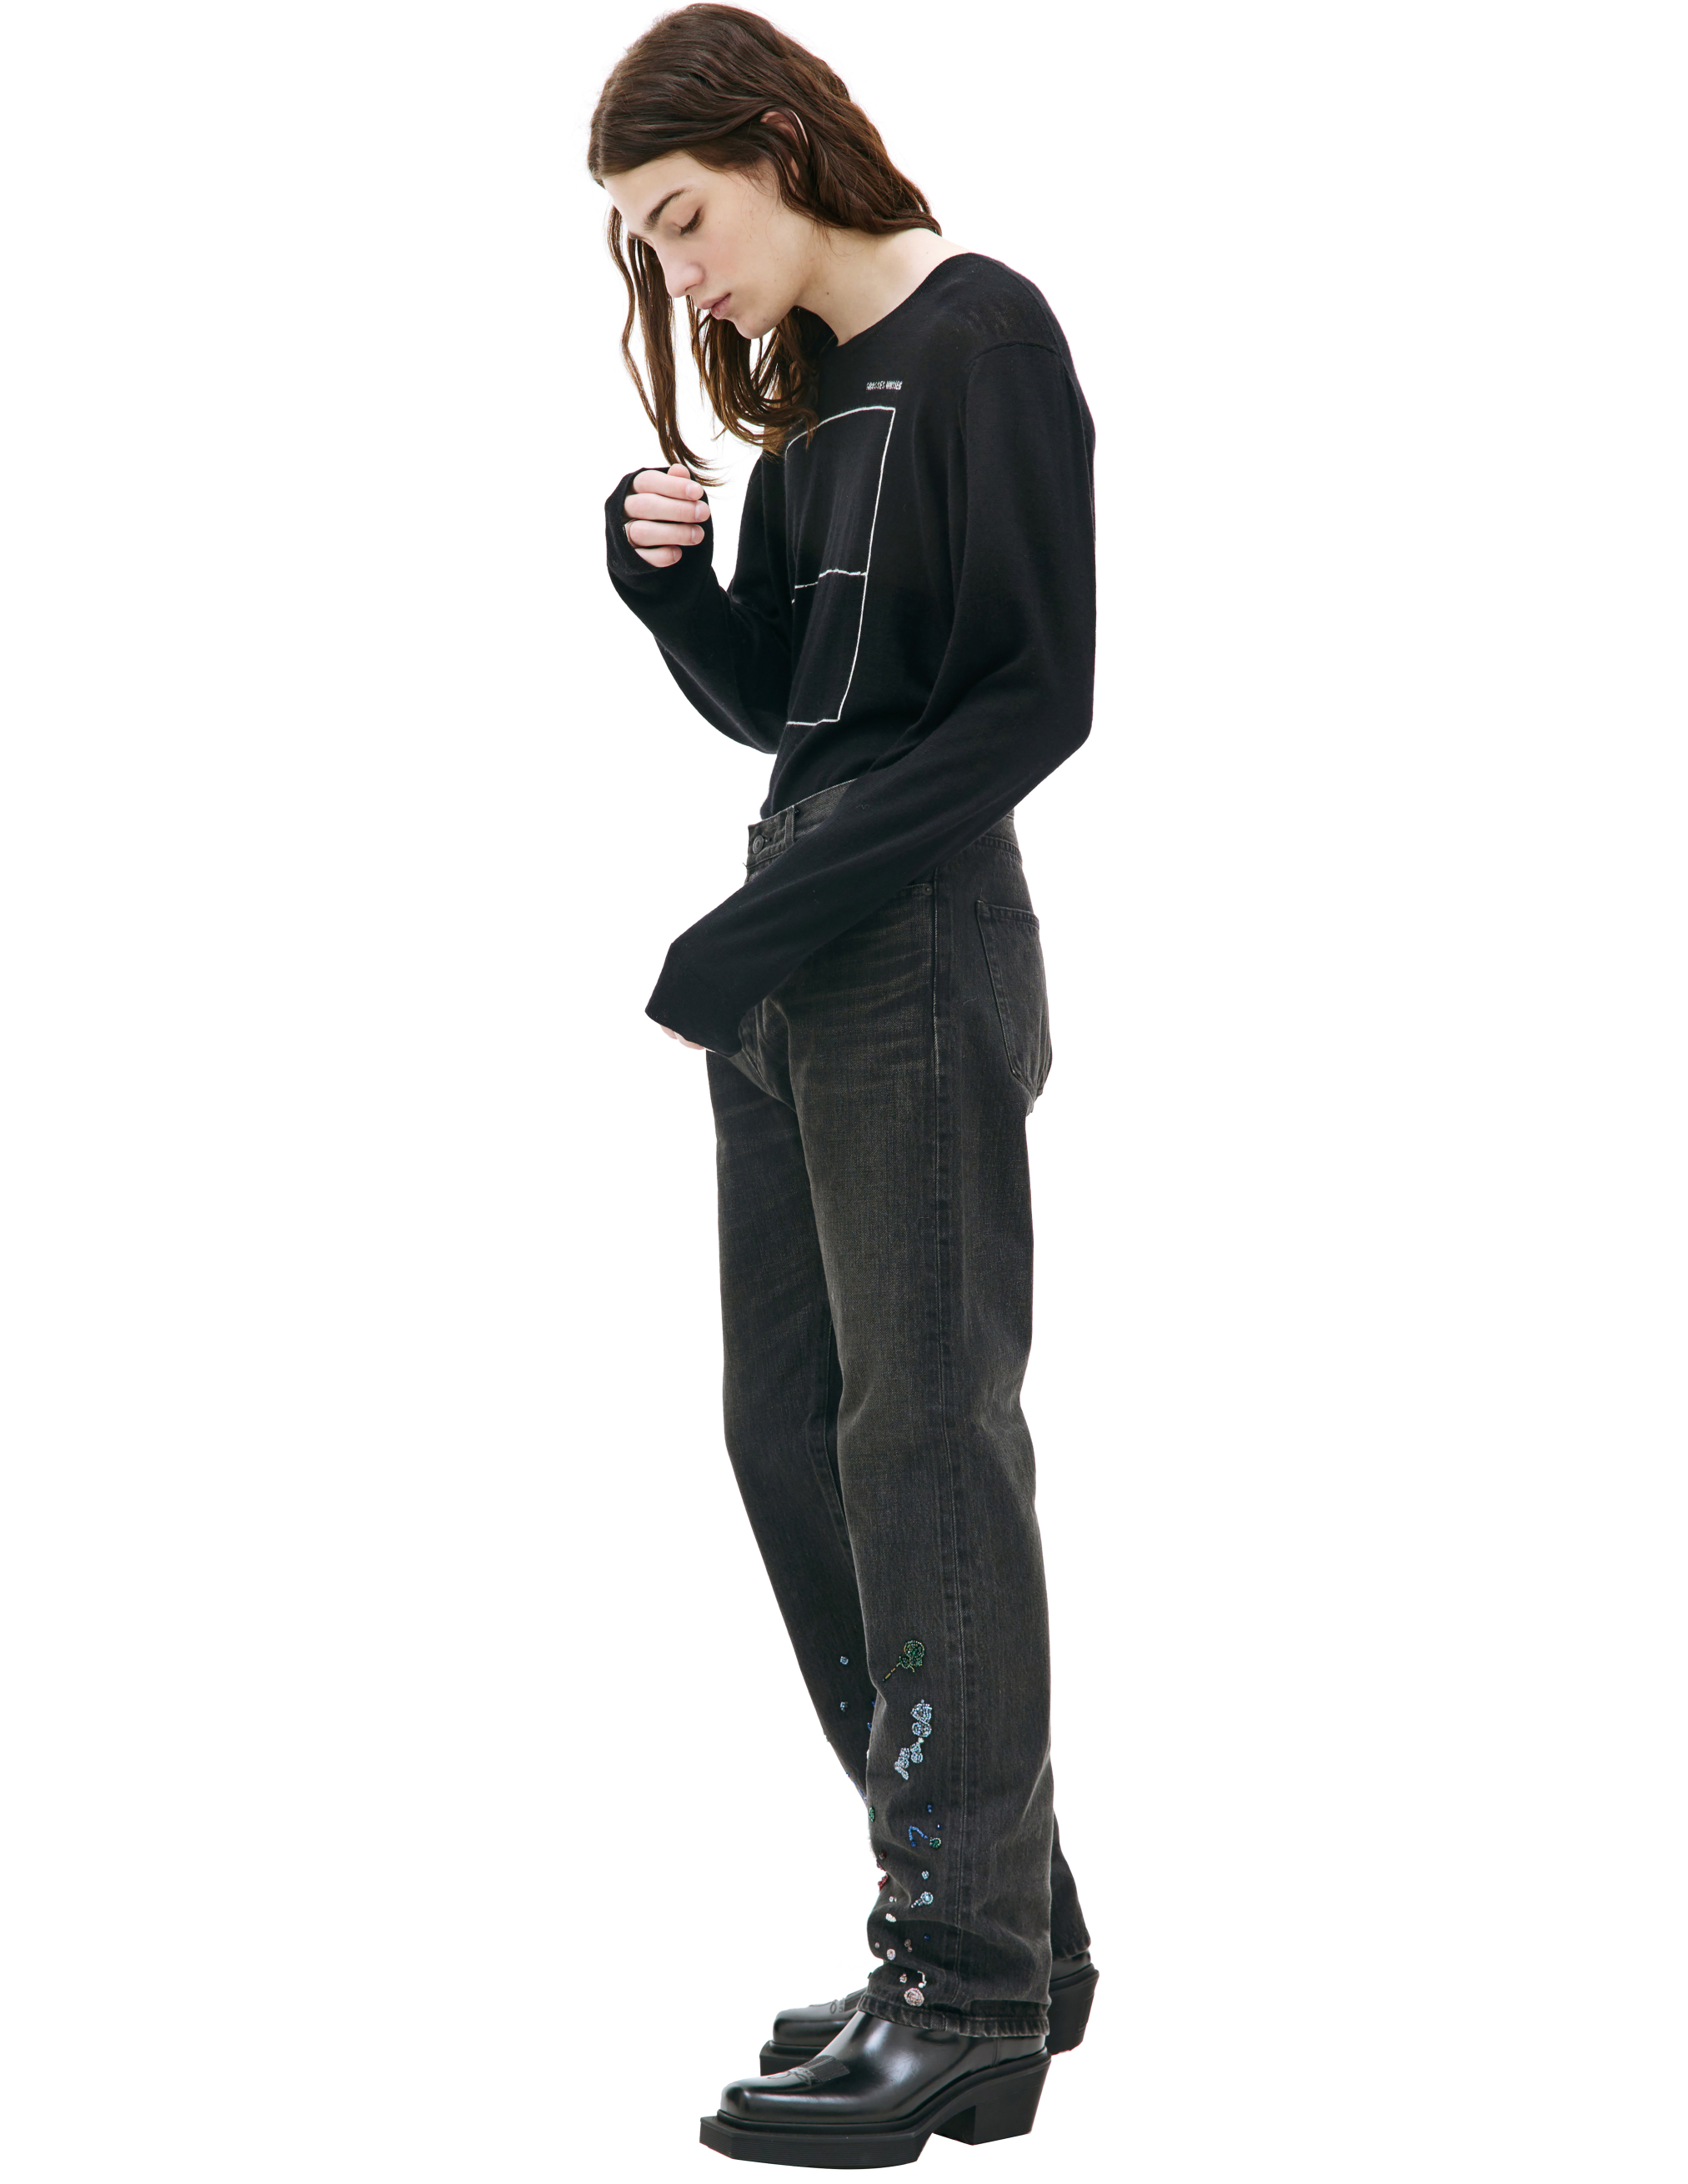 Серые джинсы с вышивкой бисером Undercover UC2C4509-1, размер 5 - фото 2